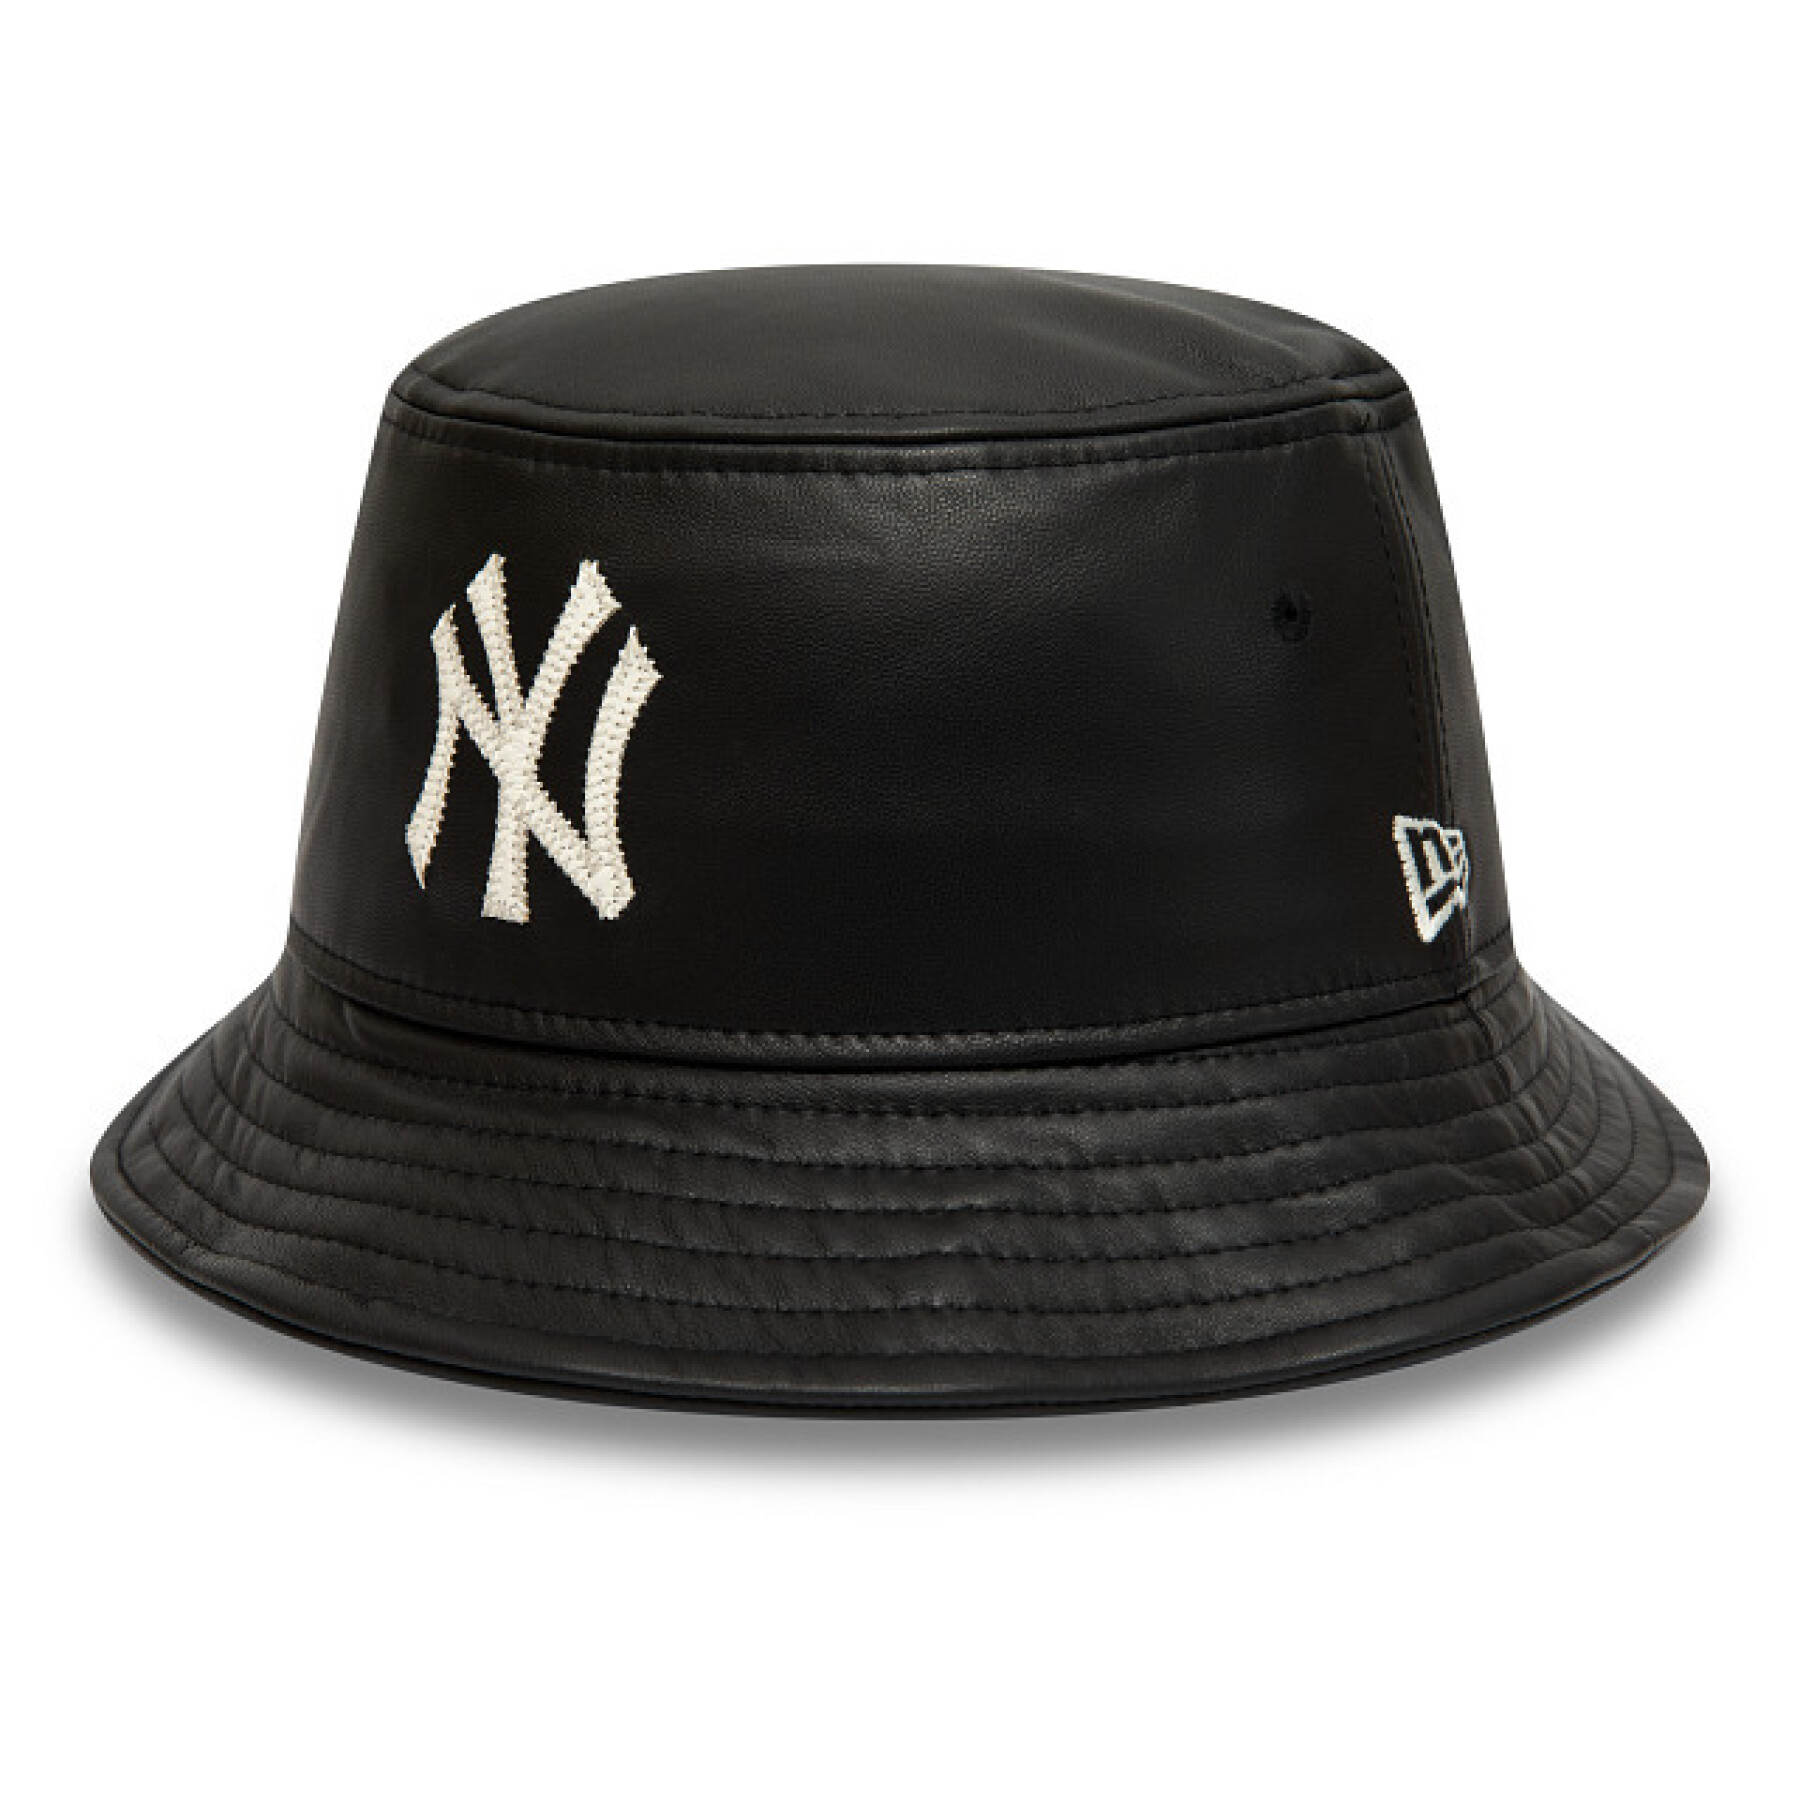 Bob New York Yankees MLB